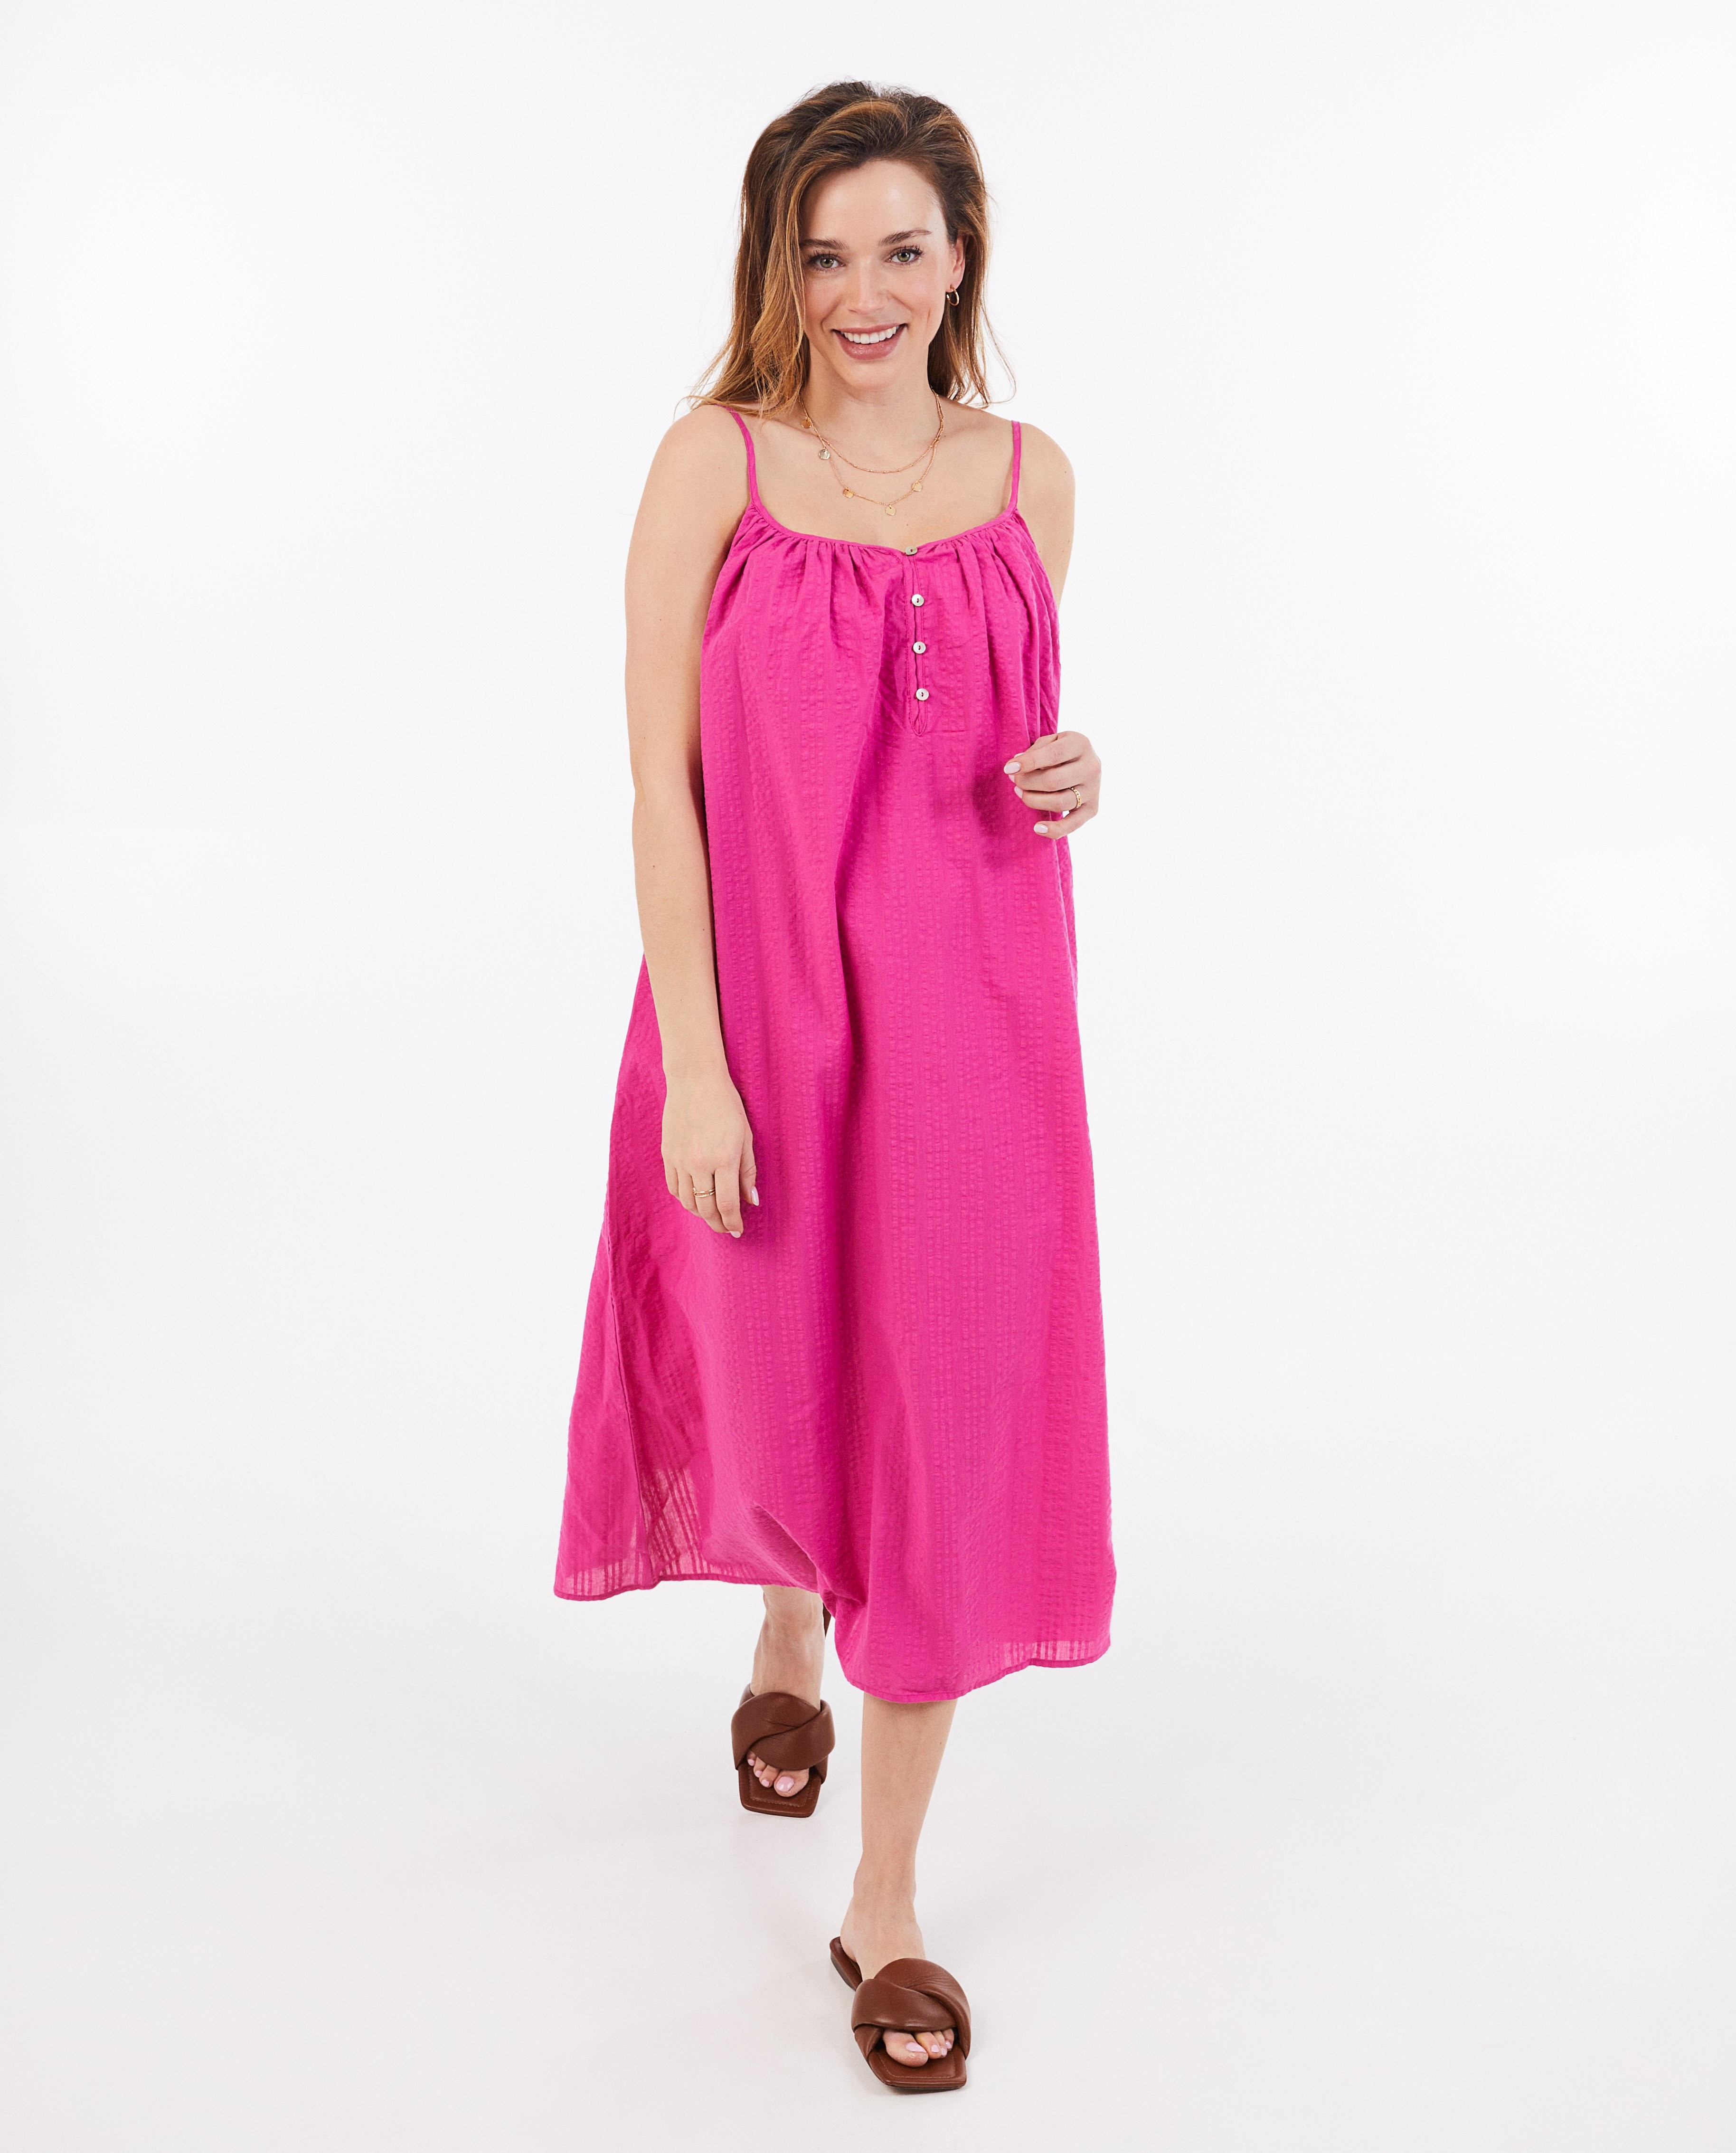 Kleedjes - Roze jurk met structuur